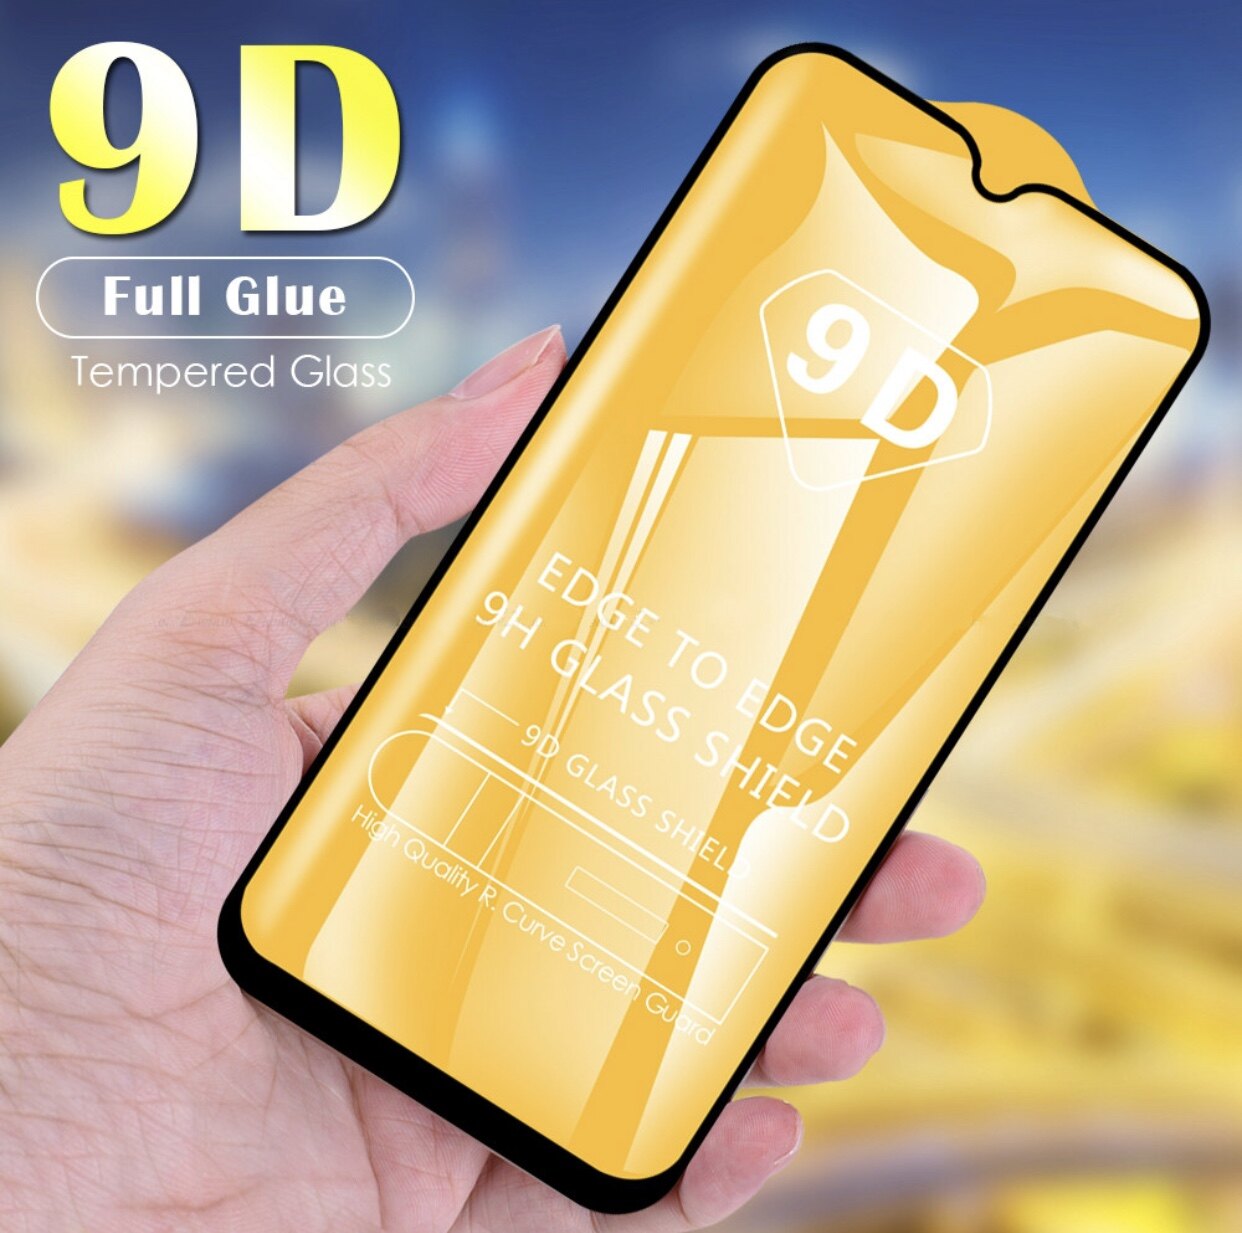 iPhone SE 2020 / iPhone 8 / iPhone 7 / iphone11 / iphone12 / iphone13 ฟิล์มกระจกนิรภัยเต็มจอ กาวเต็ม ฟิล์มกระจกเต็มจอ ฟิล์มเต็มจอ ฟิล์มกระจก Tempered Glass 9H  รูปแบบรุ่นที่รับรอง iP 13pro max-ขอบดำ